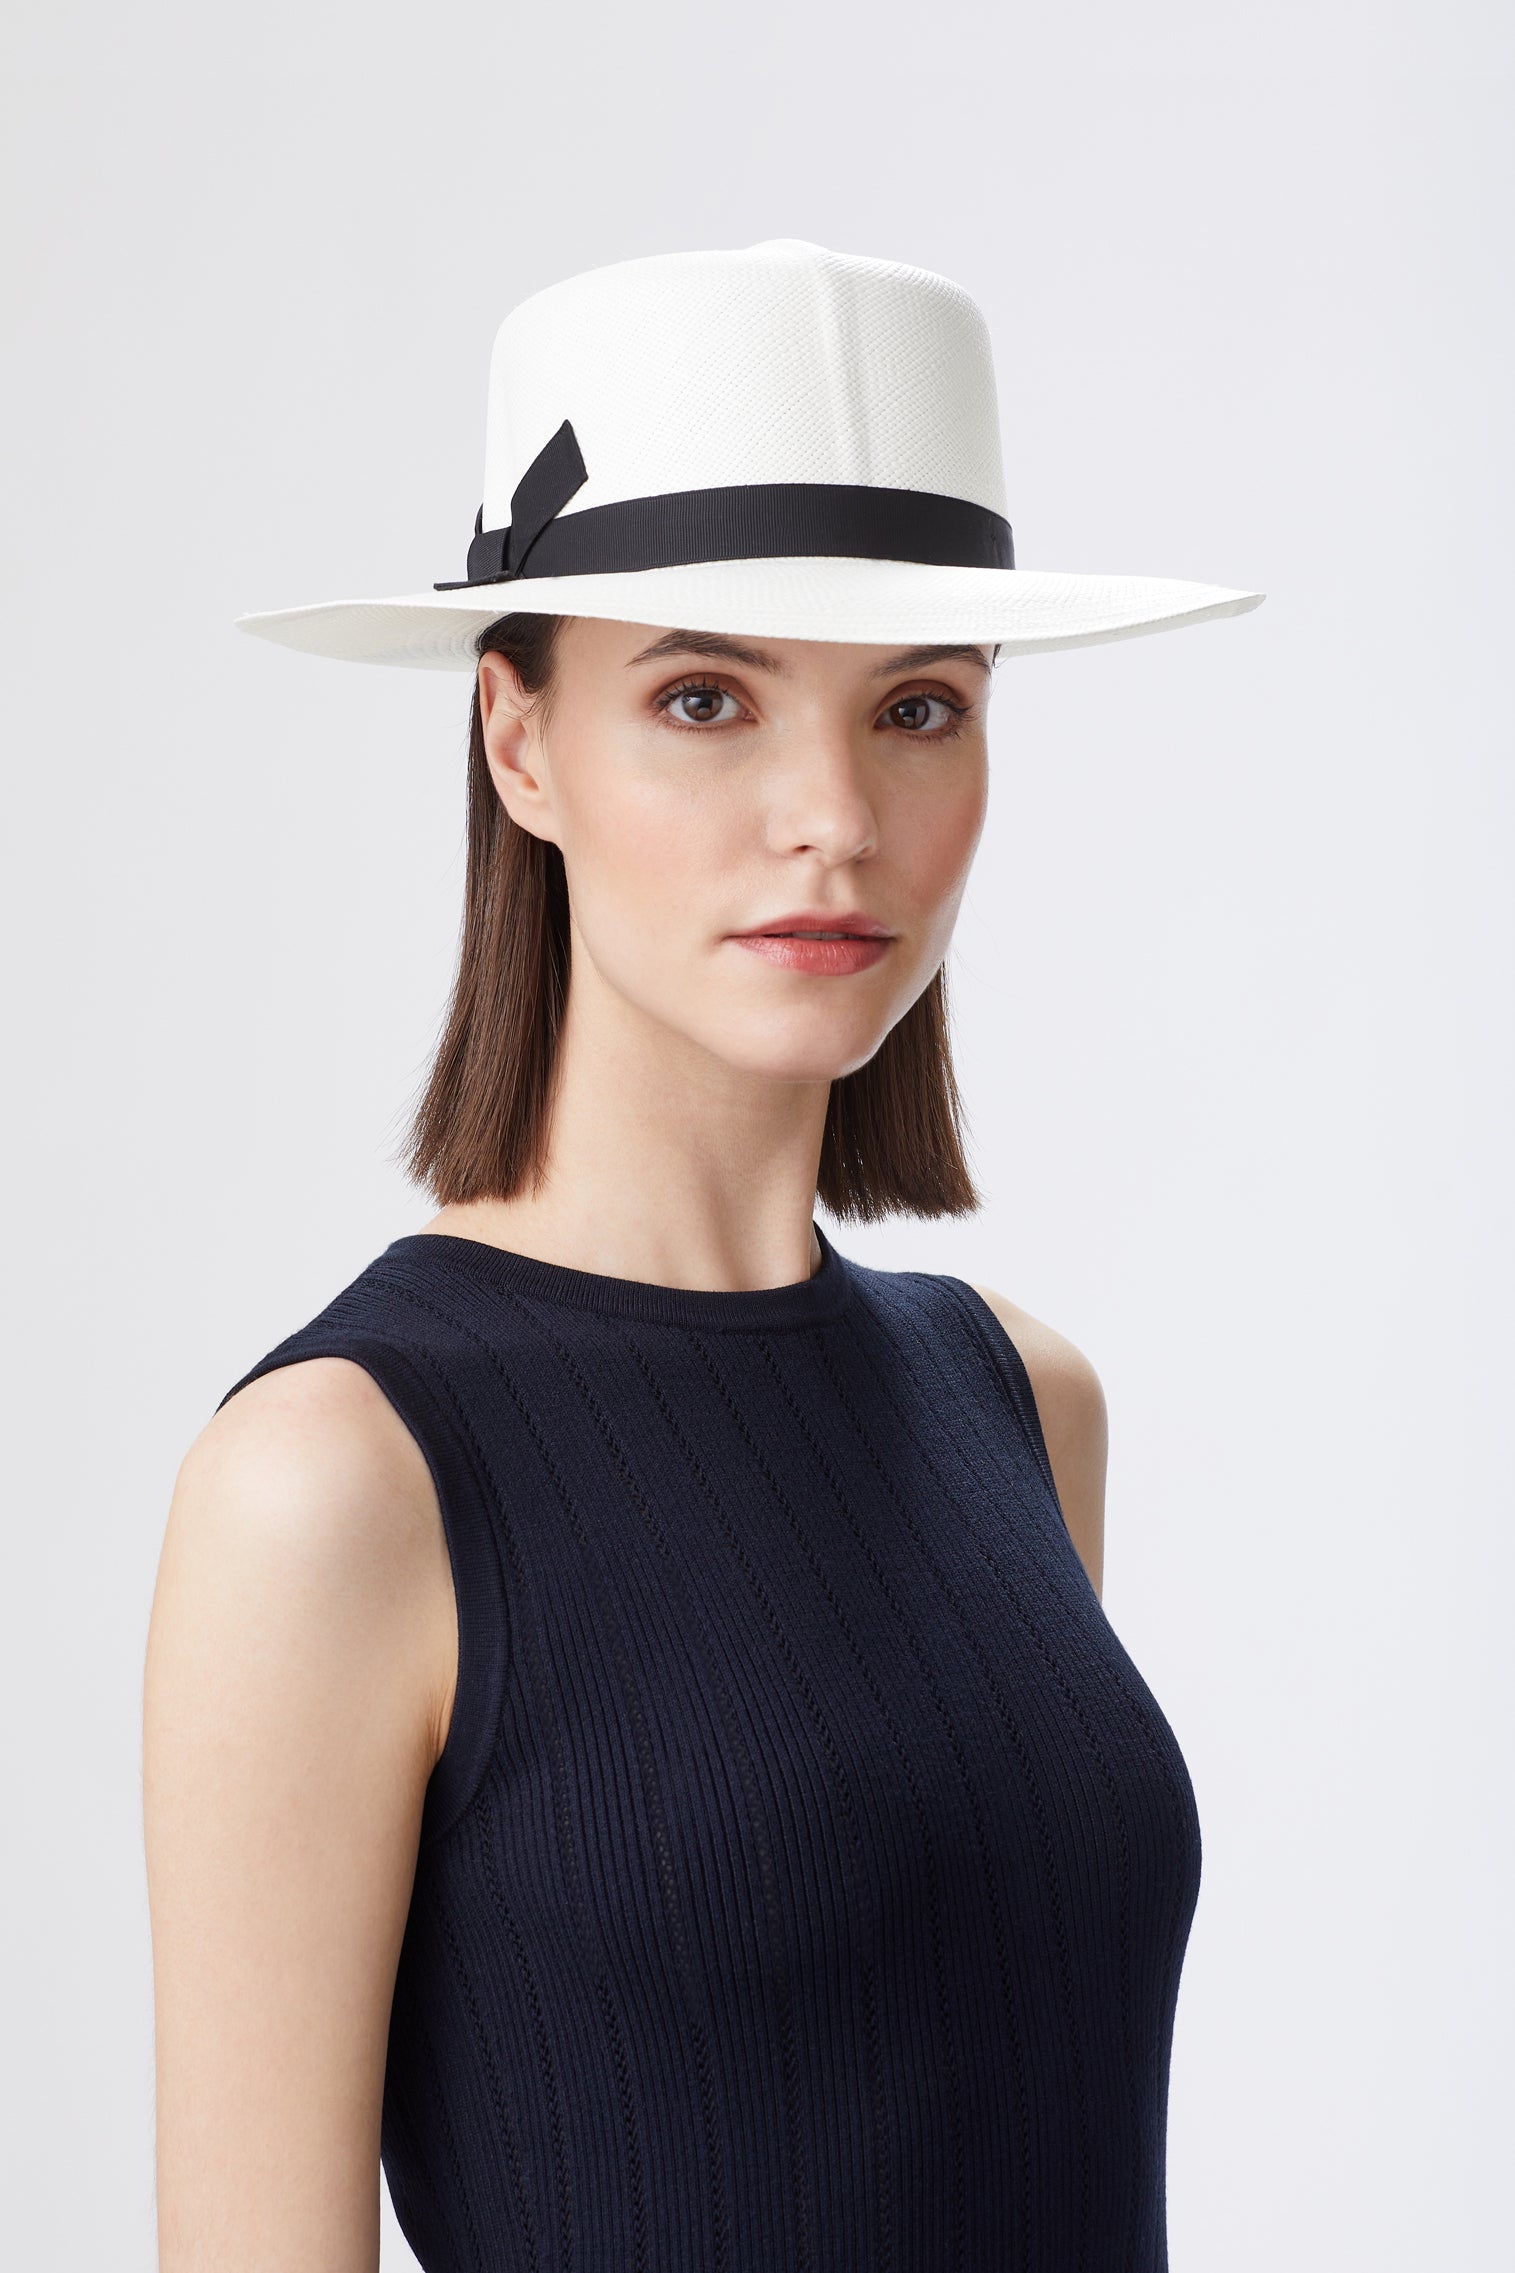 Women's Hats - Elegant Hat Styles for Women - Lock & Co.